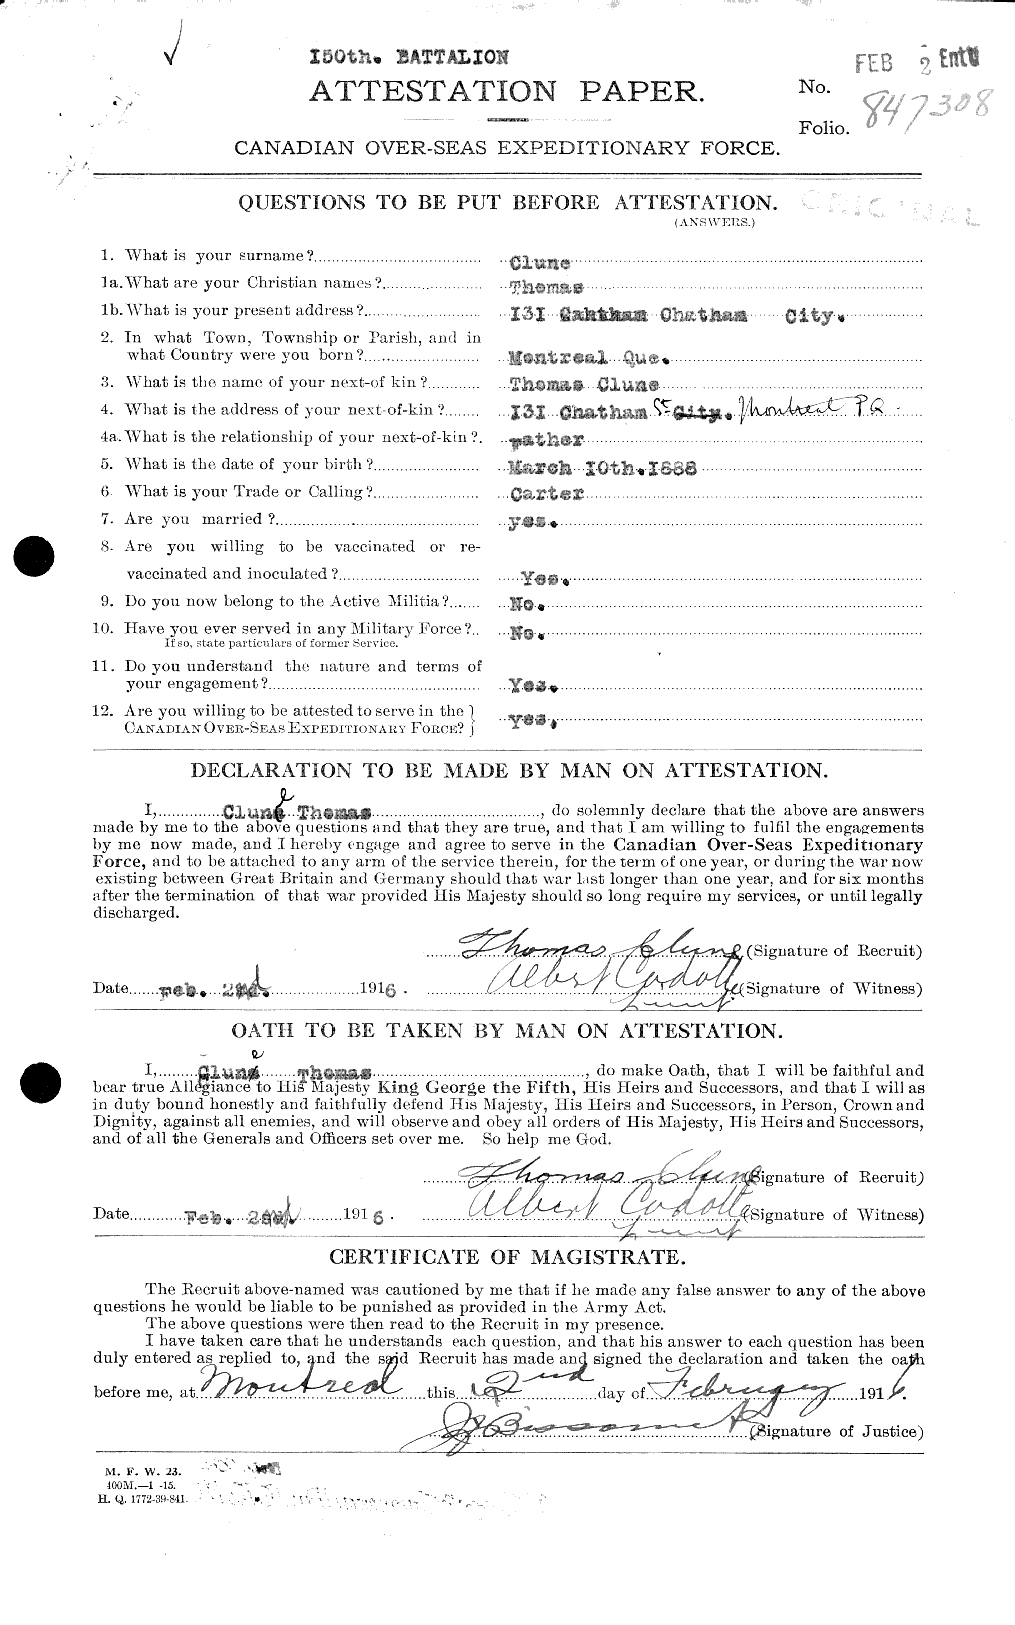 Dossiers du Personnel de la Première Guerre mondiale - CEC 029214a